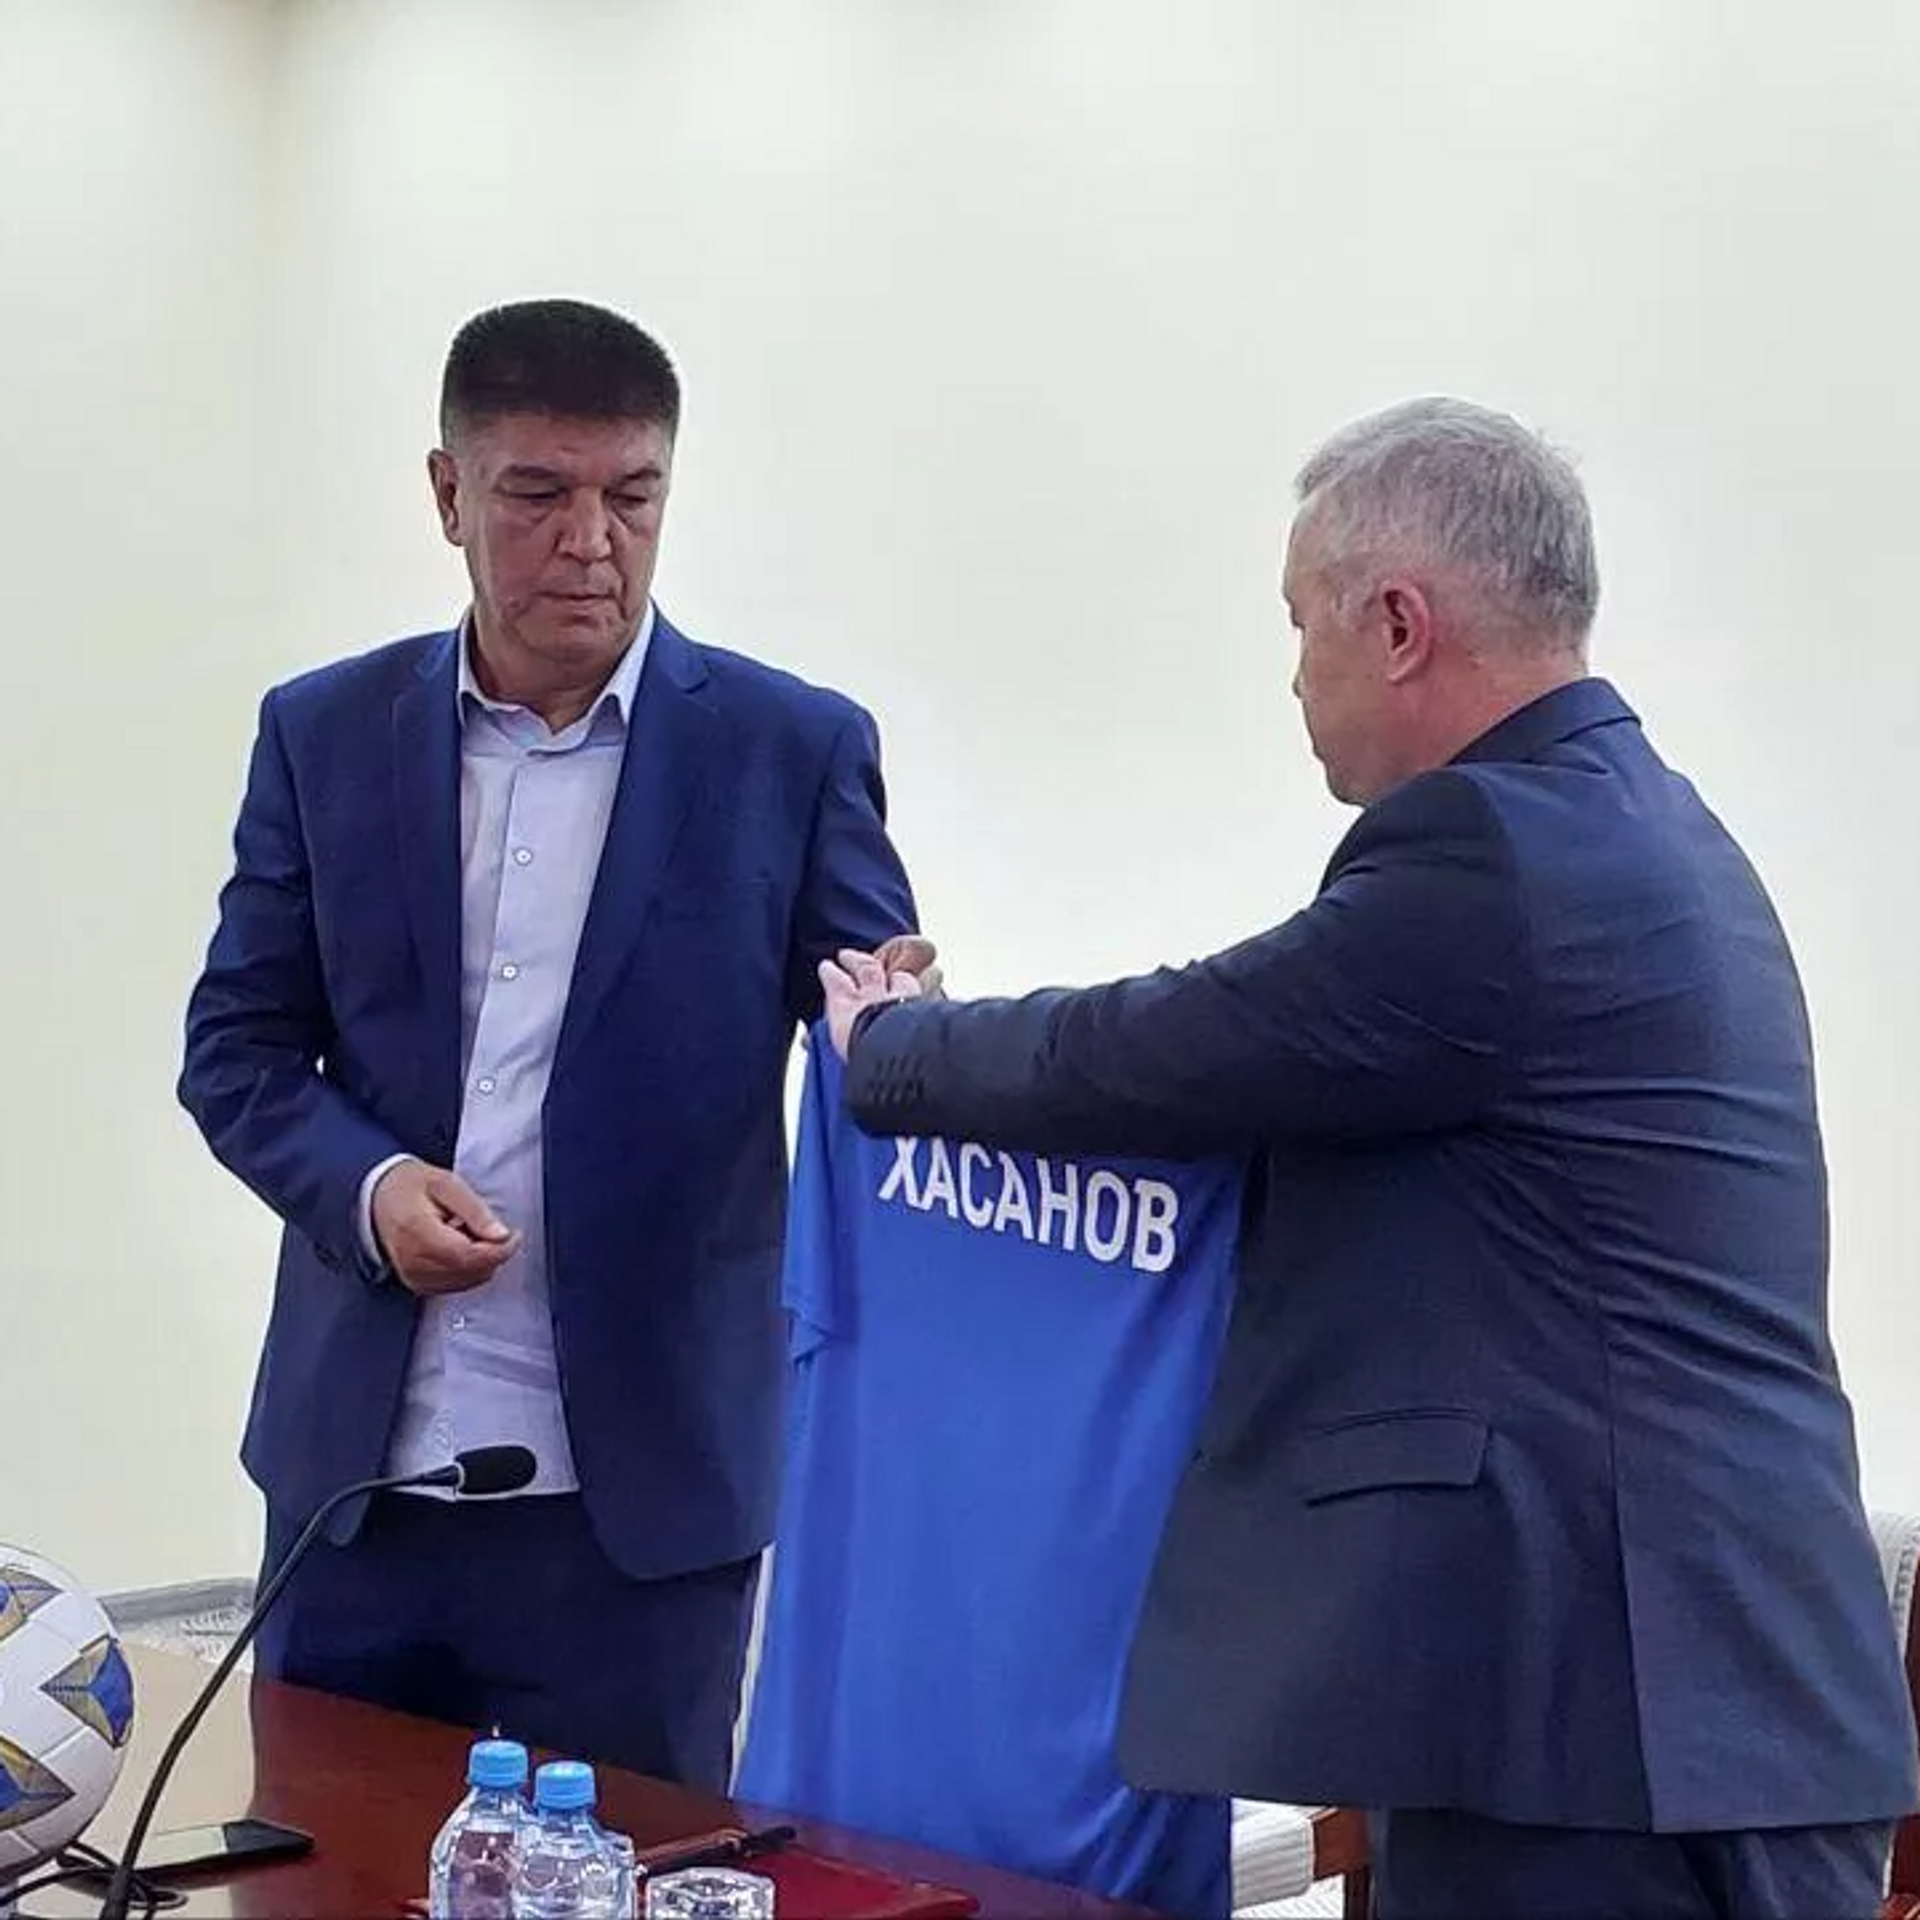 Нумон Хасанов Худжанд. Нумон Хасанов тренер. Футболисты Таджикистана.